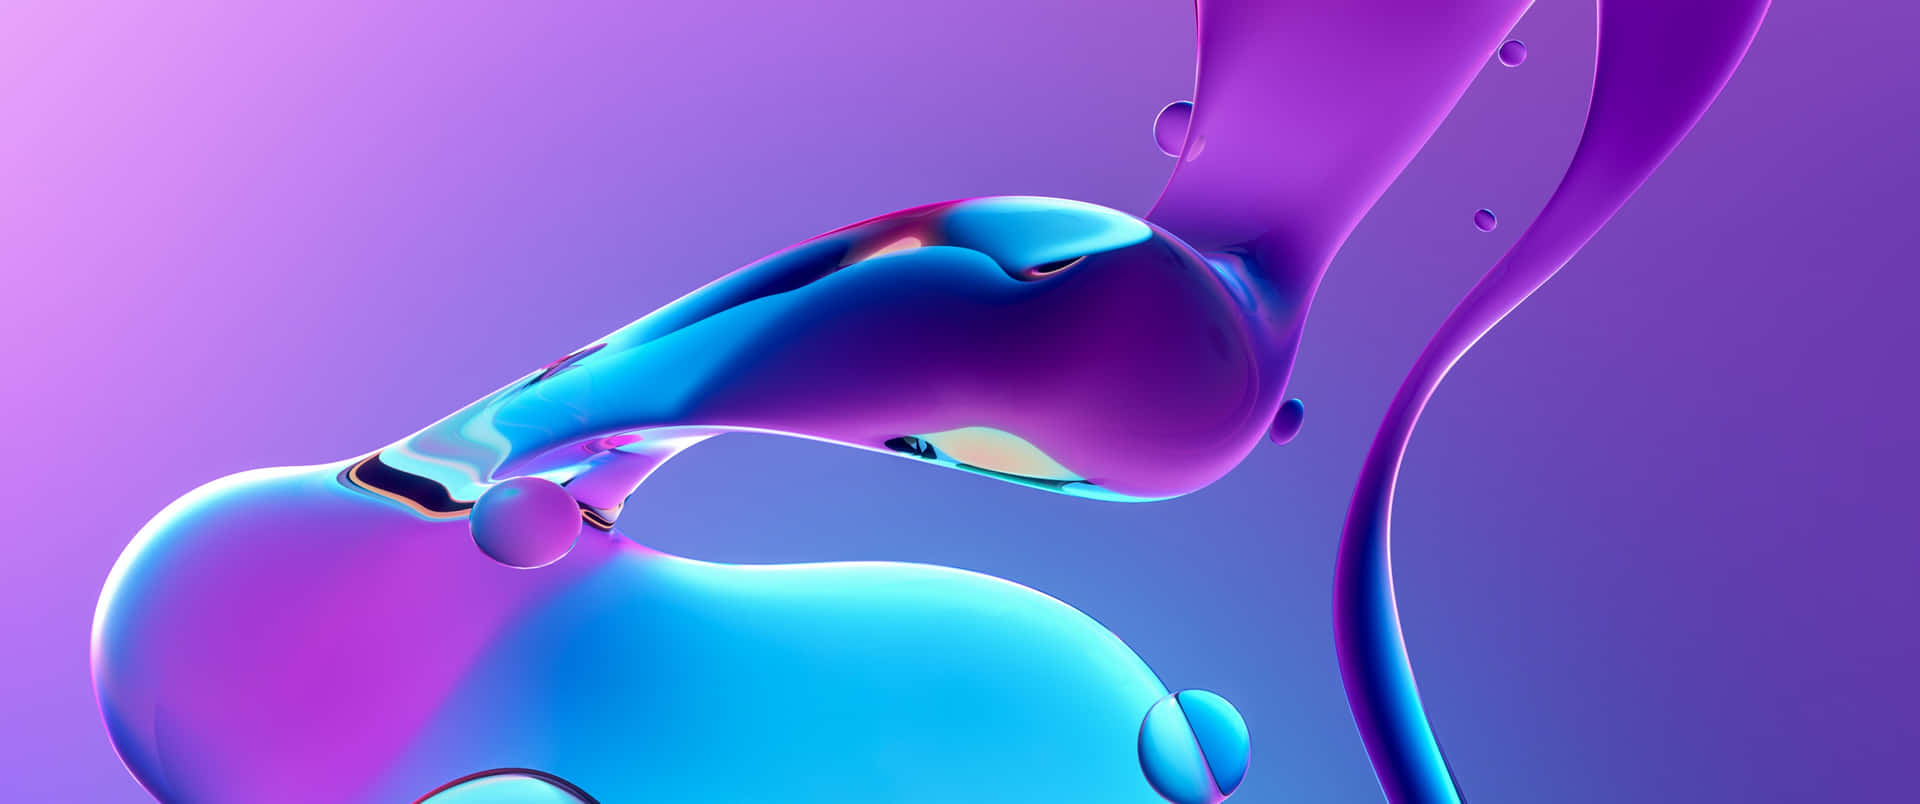 Nền độn Gradient Liquid đầy màu sắc sẽ khiến bạn bị thu hút ngay từ cái nhìn đầu tiên. Hãy nhanh tay click vào hình ảnh liên quan để thưởng thức ngay bộ sưu tập hình nền độn Gradient Liquid đẹp mắt này.